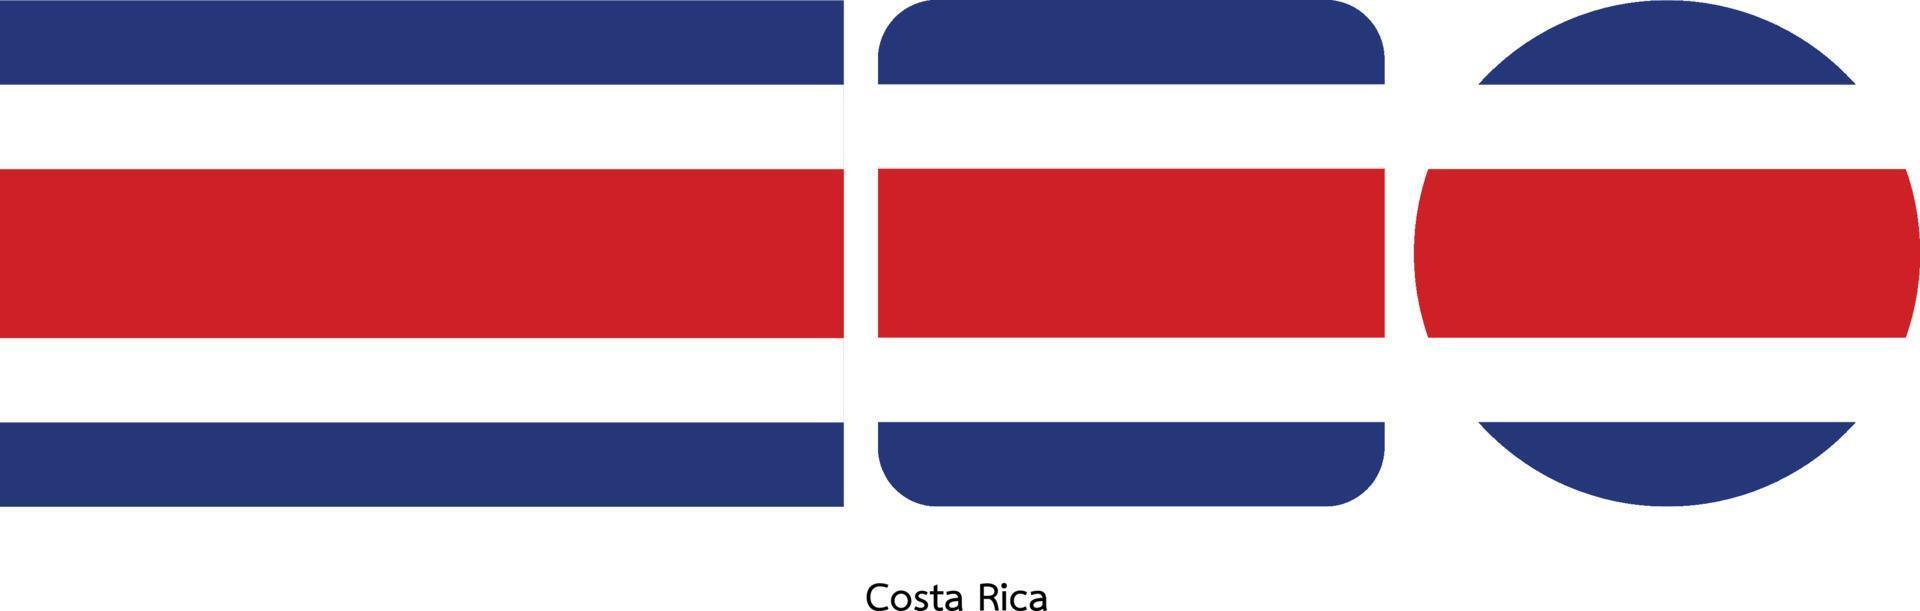 bandiera della costa rica, illustrazione vettoriale